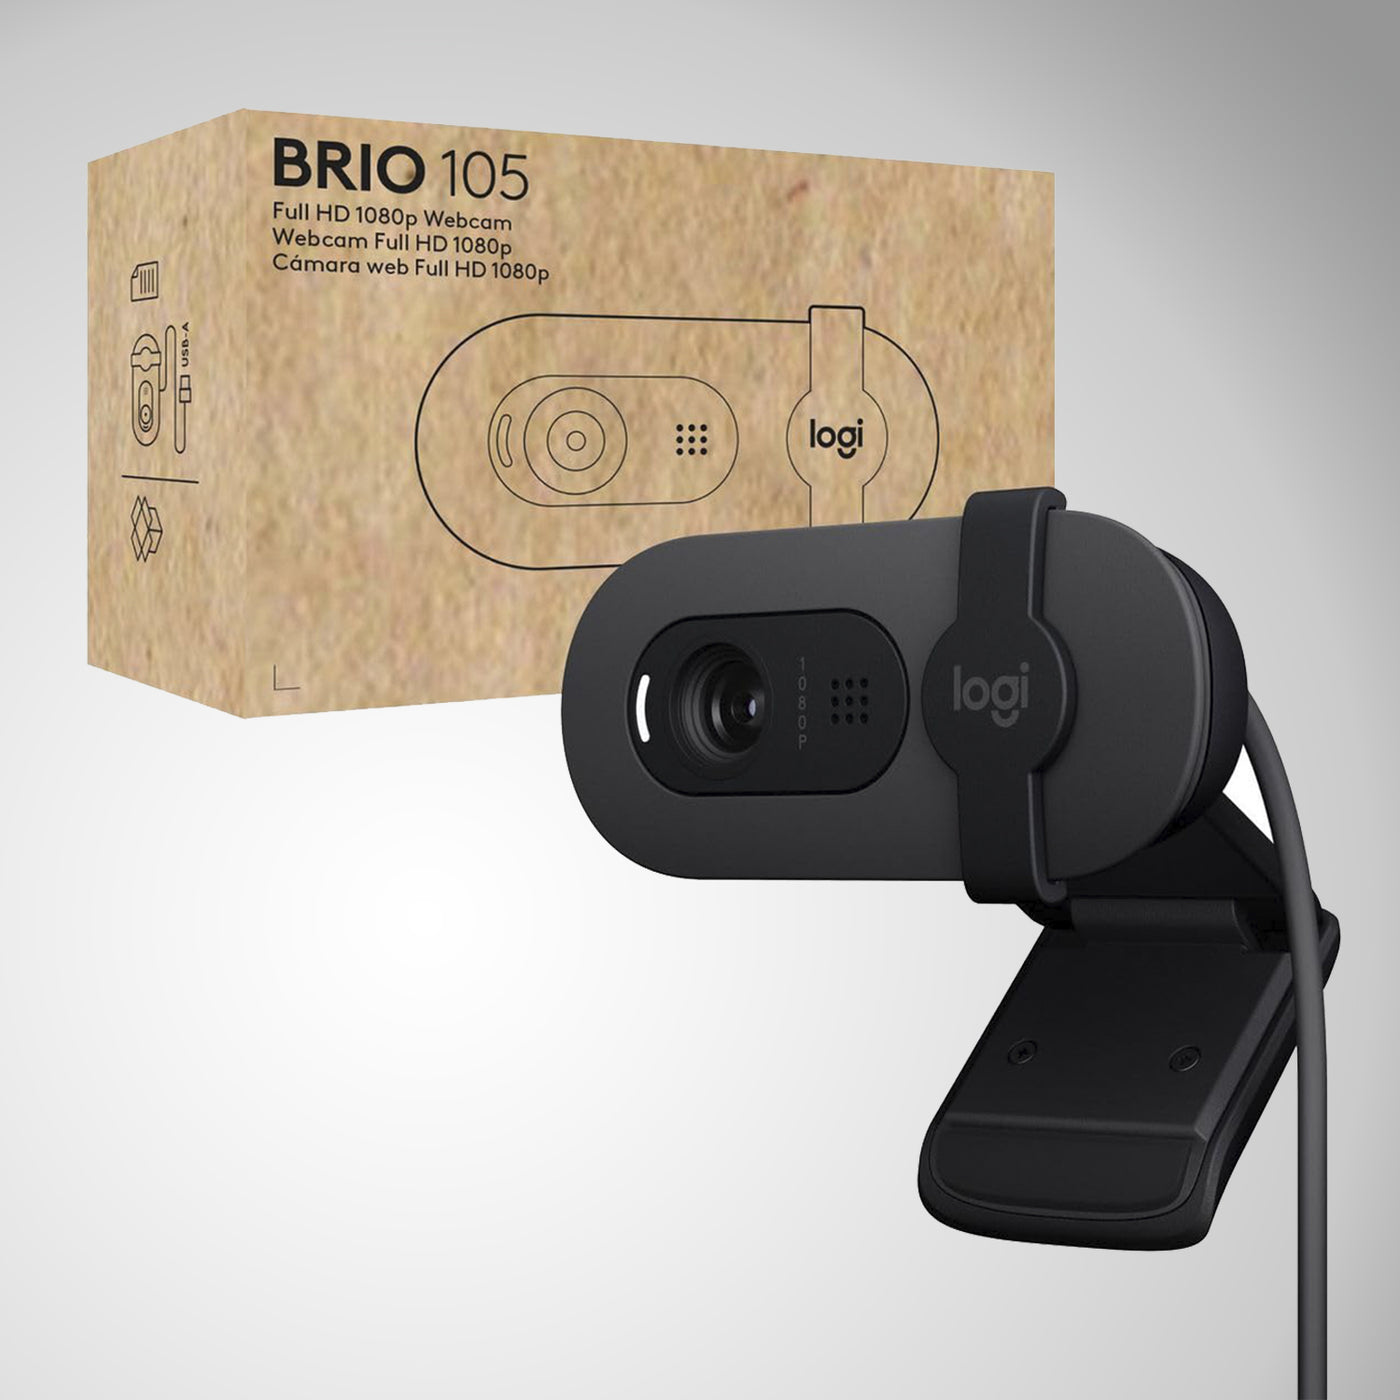 Cámara Logitech Brio 105 Full HD 1080p Business Webcam con equilibrio de luz automática, USB-A, obturador de privacidad, fácil instalación, compatible con Windows, macOS, ChromeOS